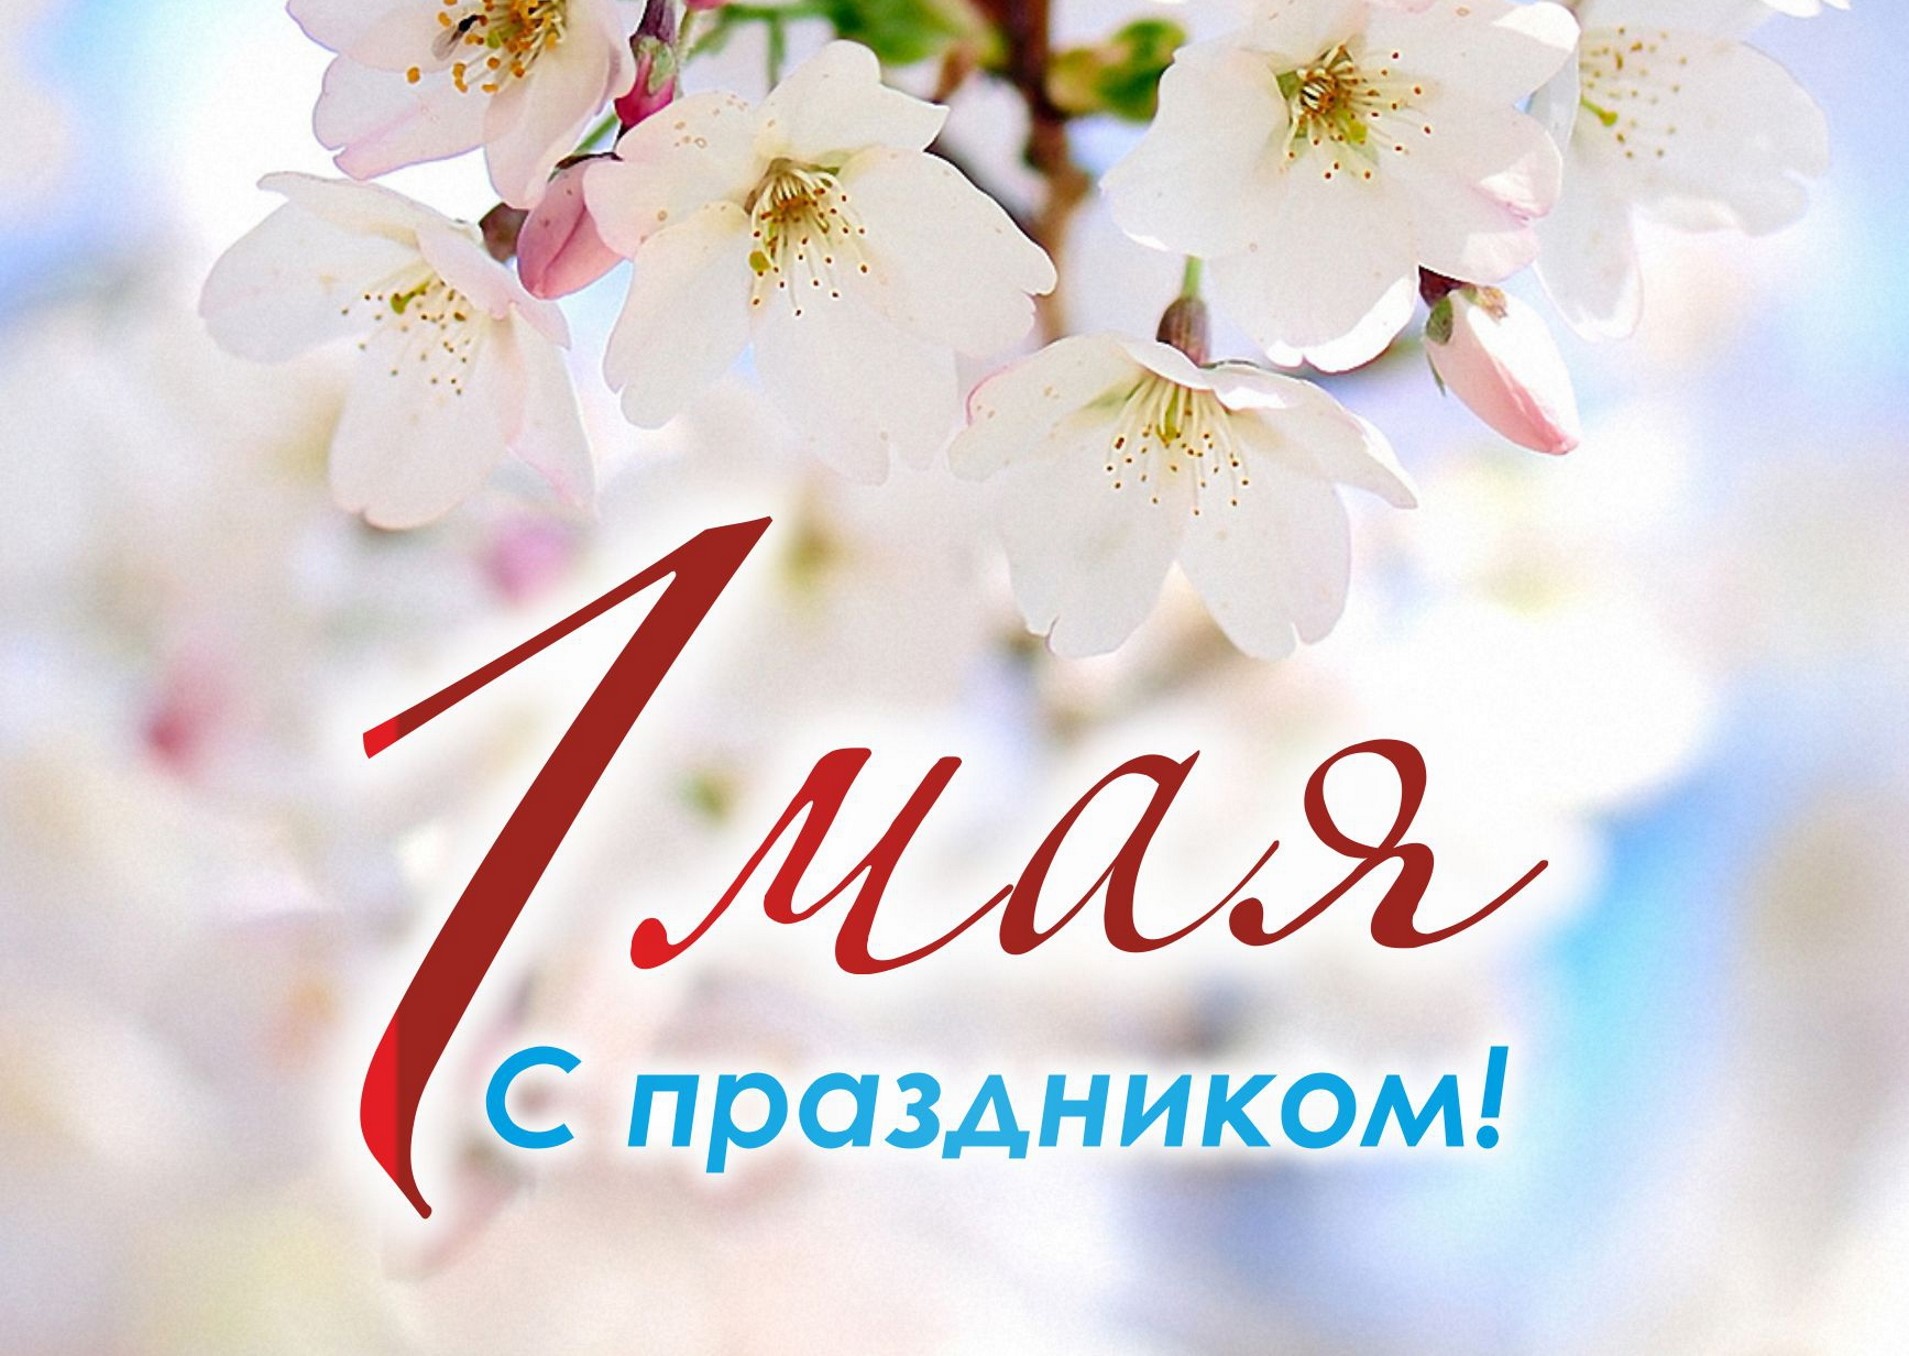 1 Мая - Праздник День Весны и труда